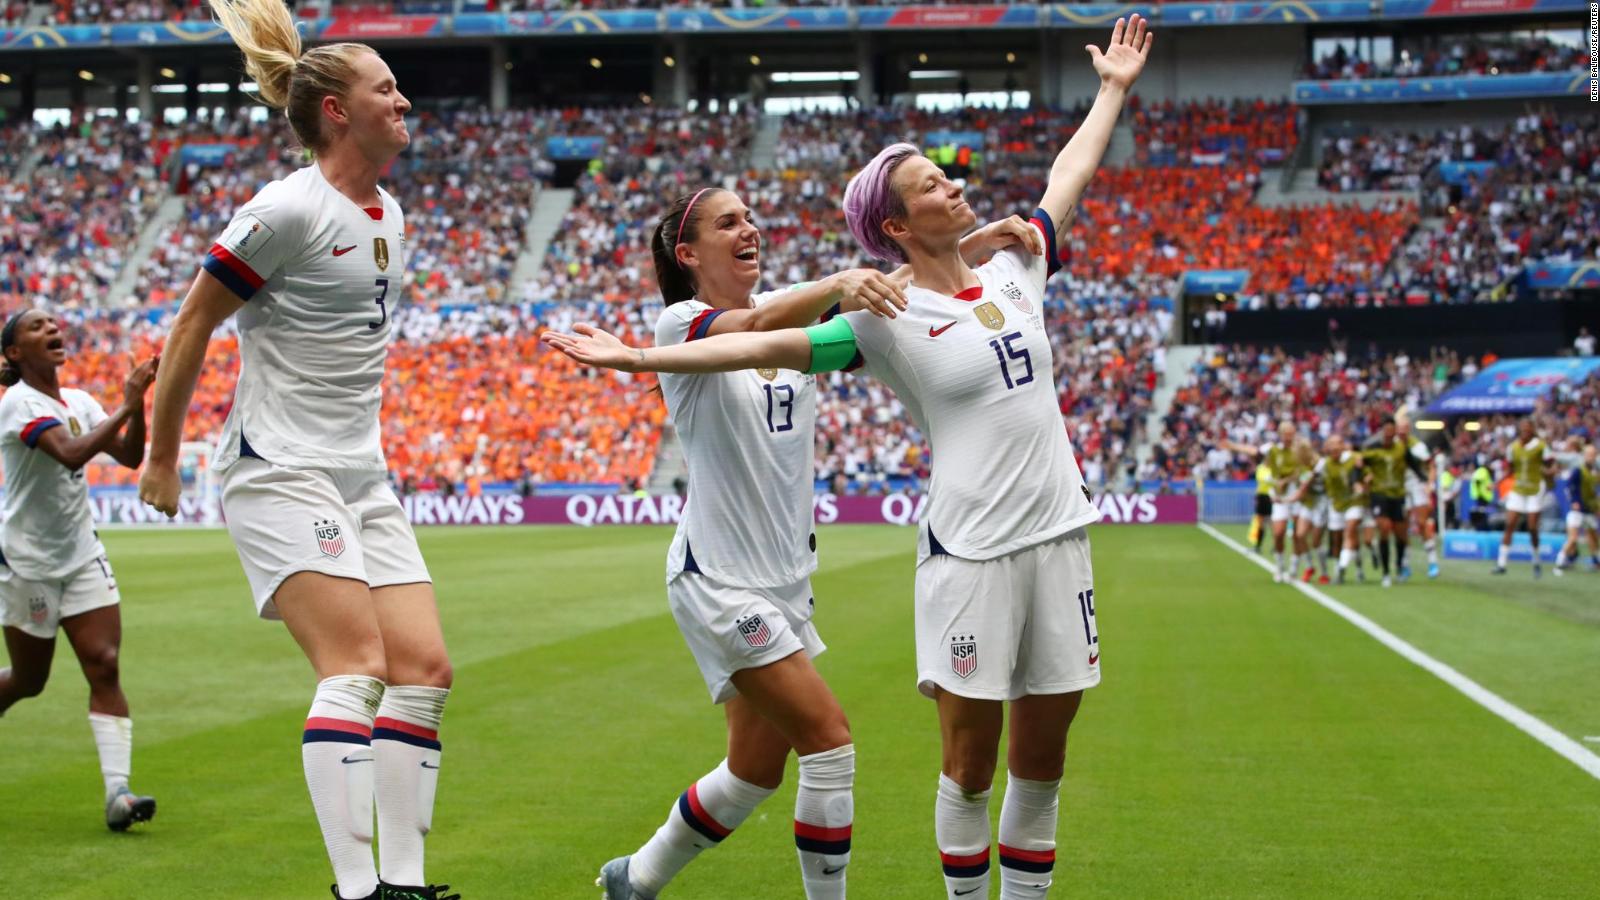 EE.UU. gana la Copa Mundial Femenina, ¿se acortará la brecha salarial?